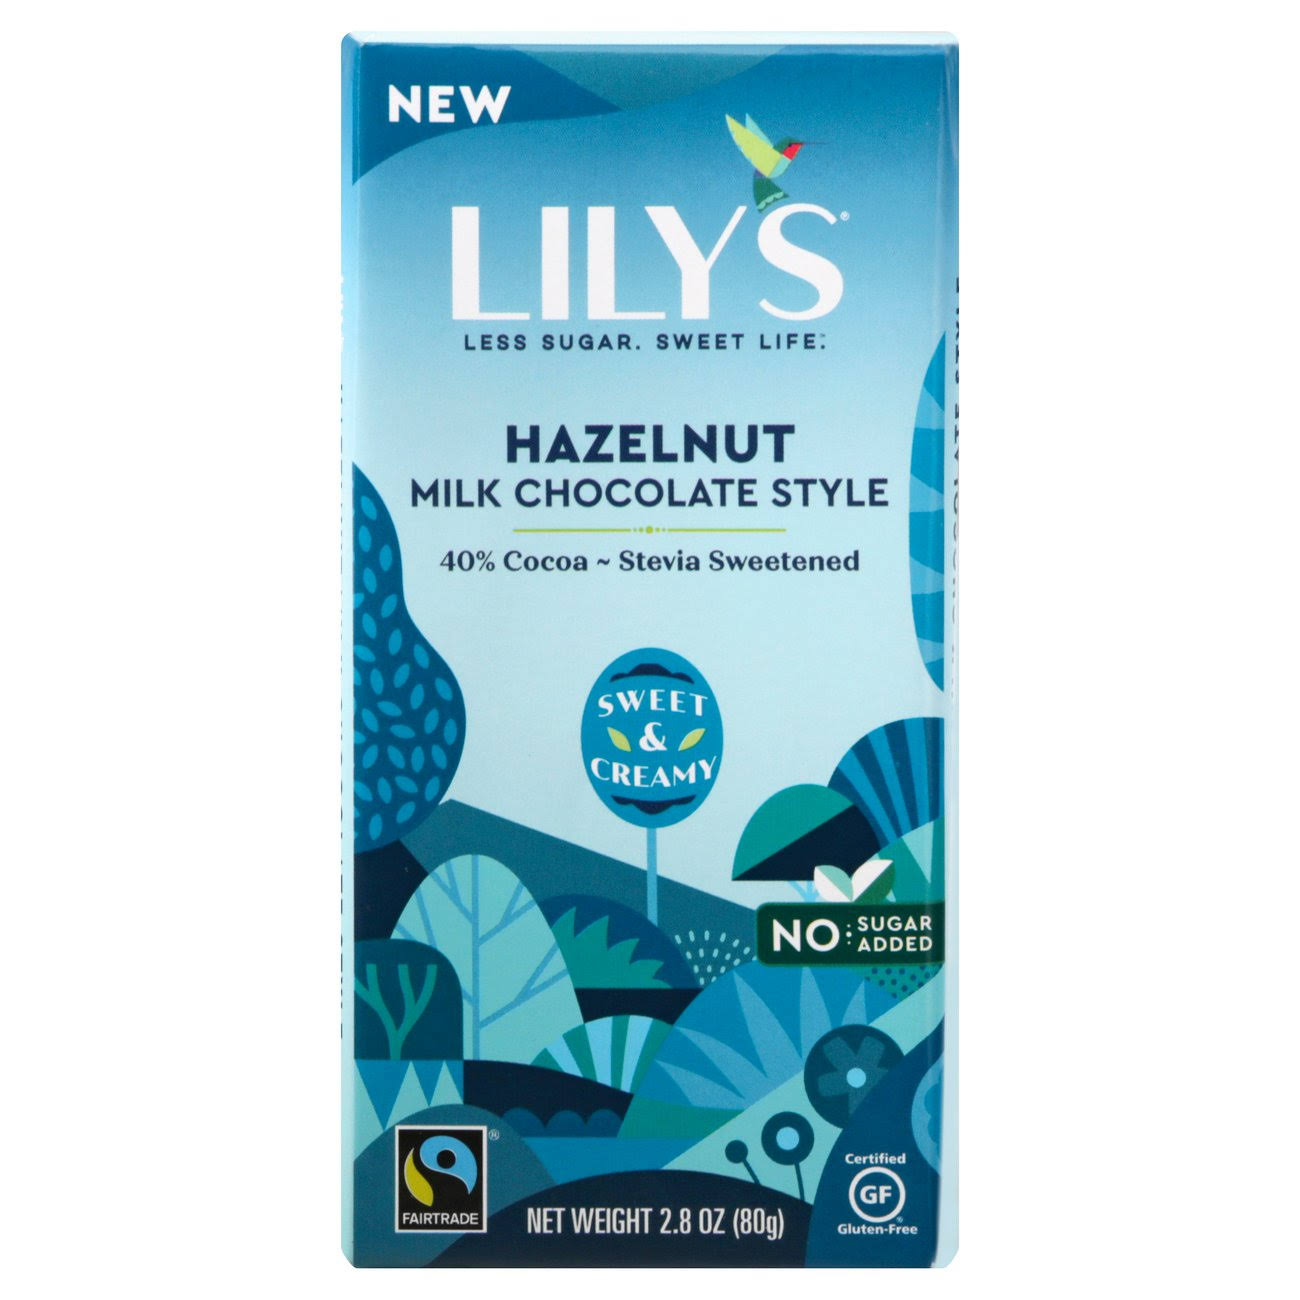 Lily's Milk Chocolate Style Bar, Hazelnut, 40% Cocoa - 2.8 oz